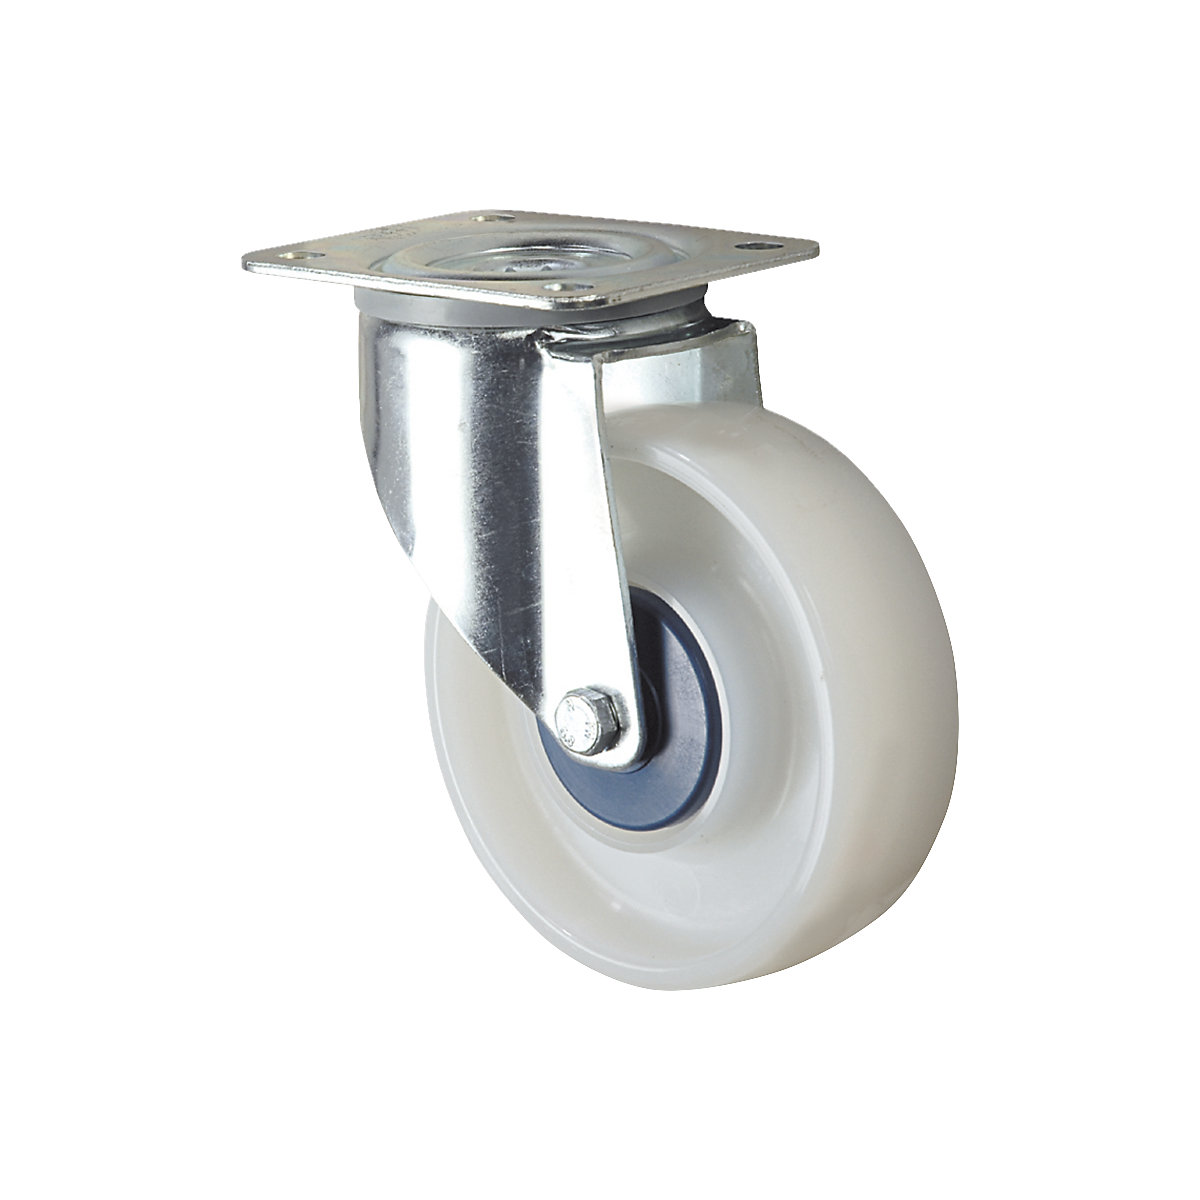 Poliamidno kolo, belo – TENTE, Ø x širina kolesa 100 x 36 mm, vrtljivo kolo-4